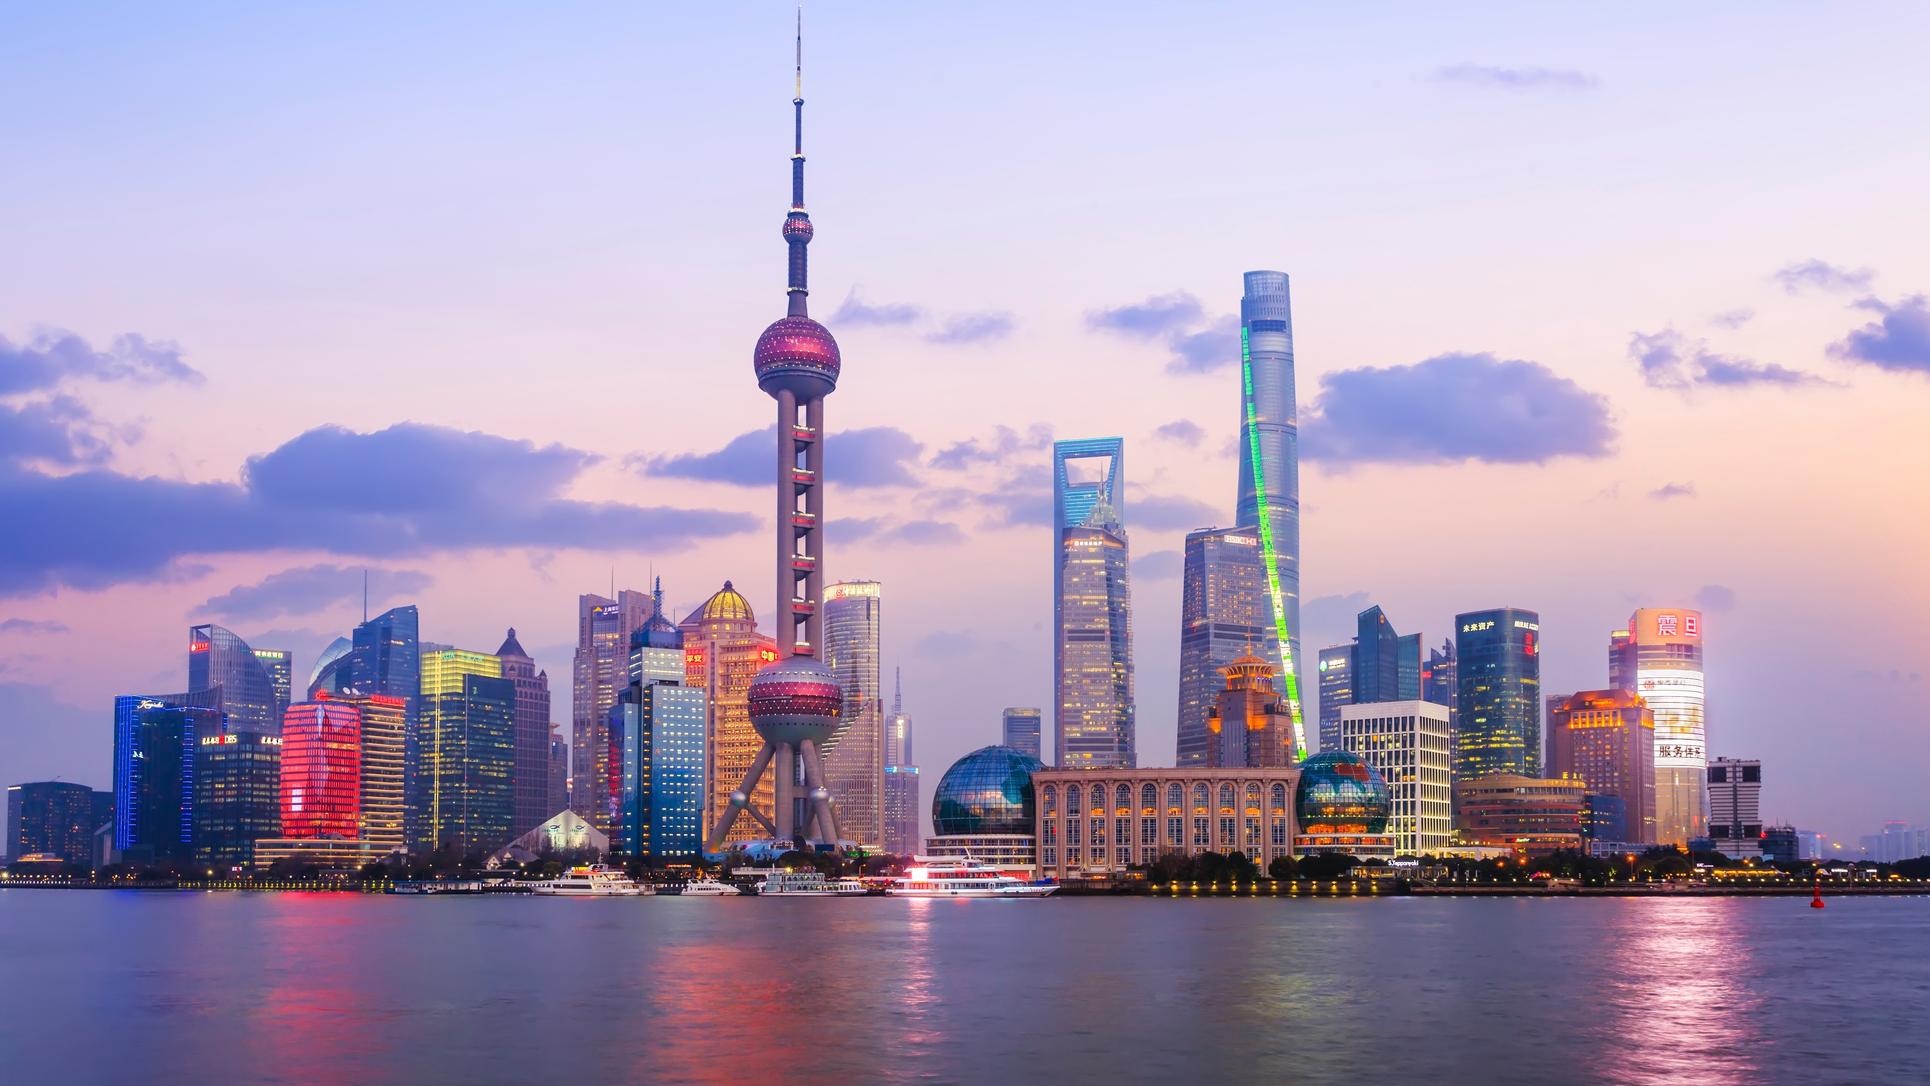 viajes lujo vuelta al mundo Shanghai skyline